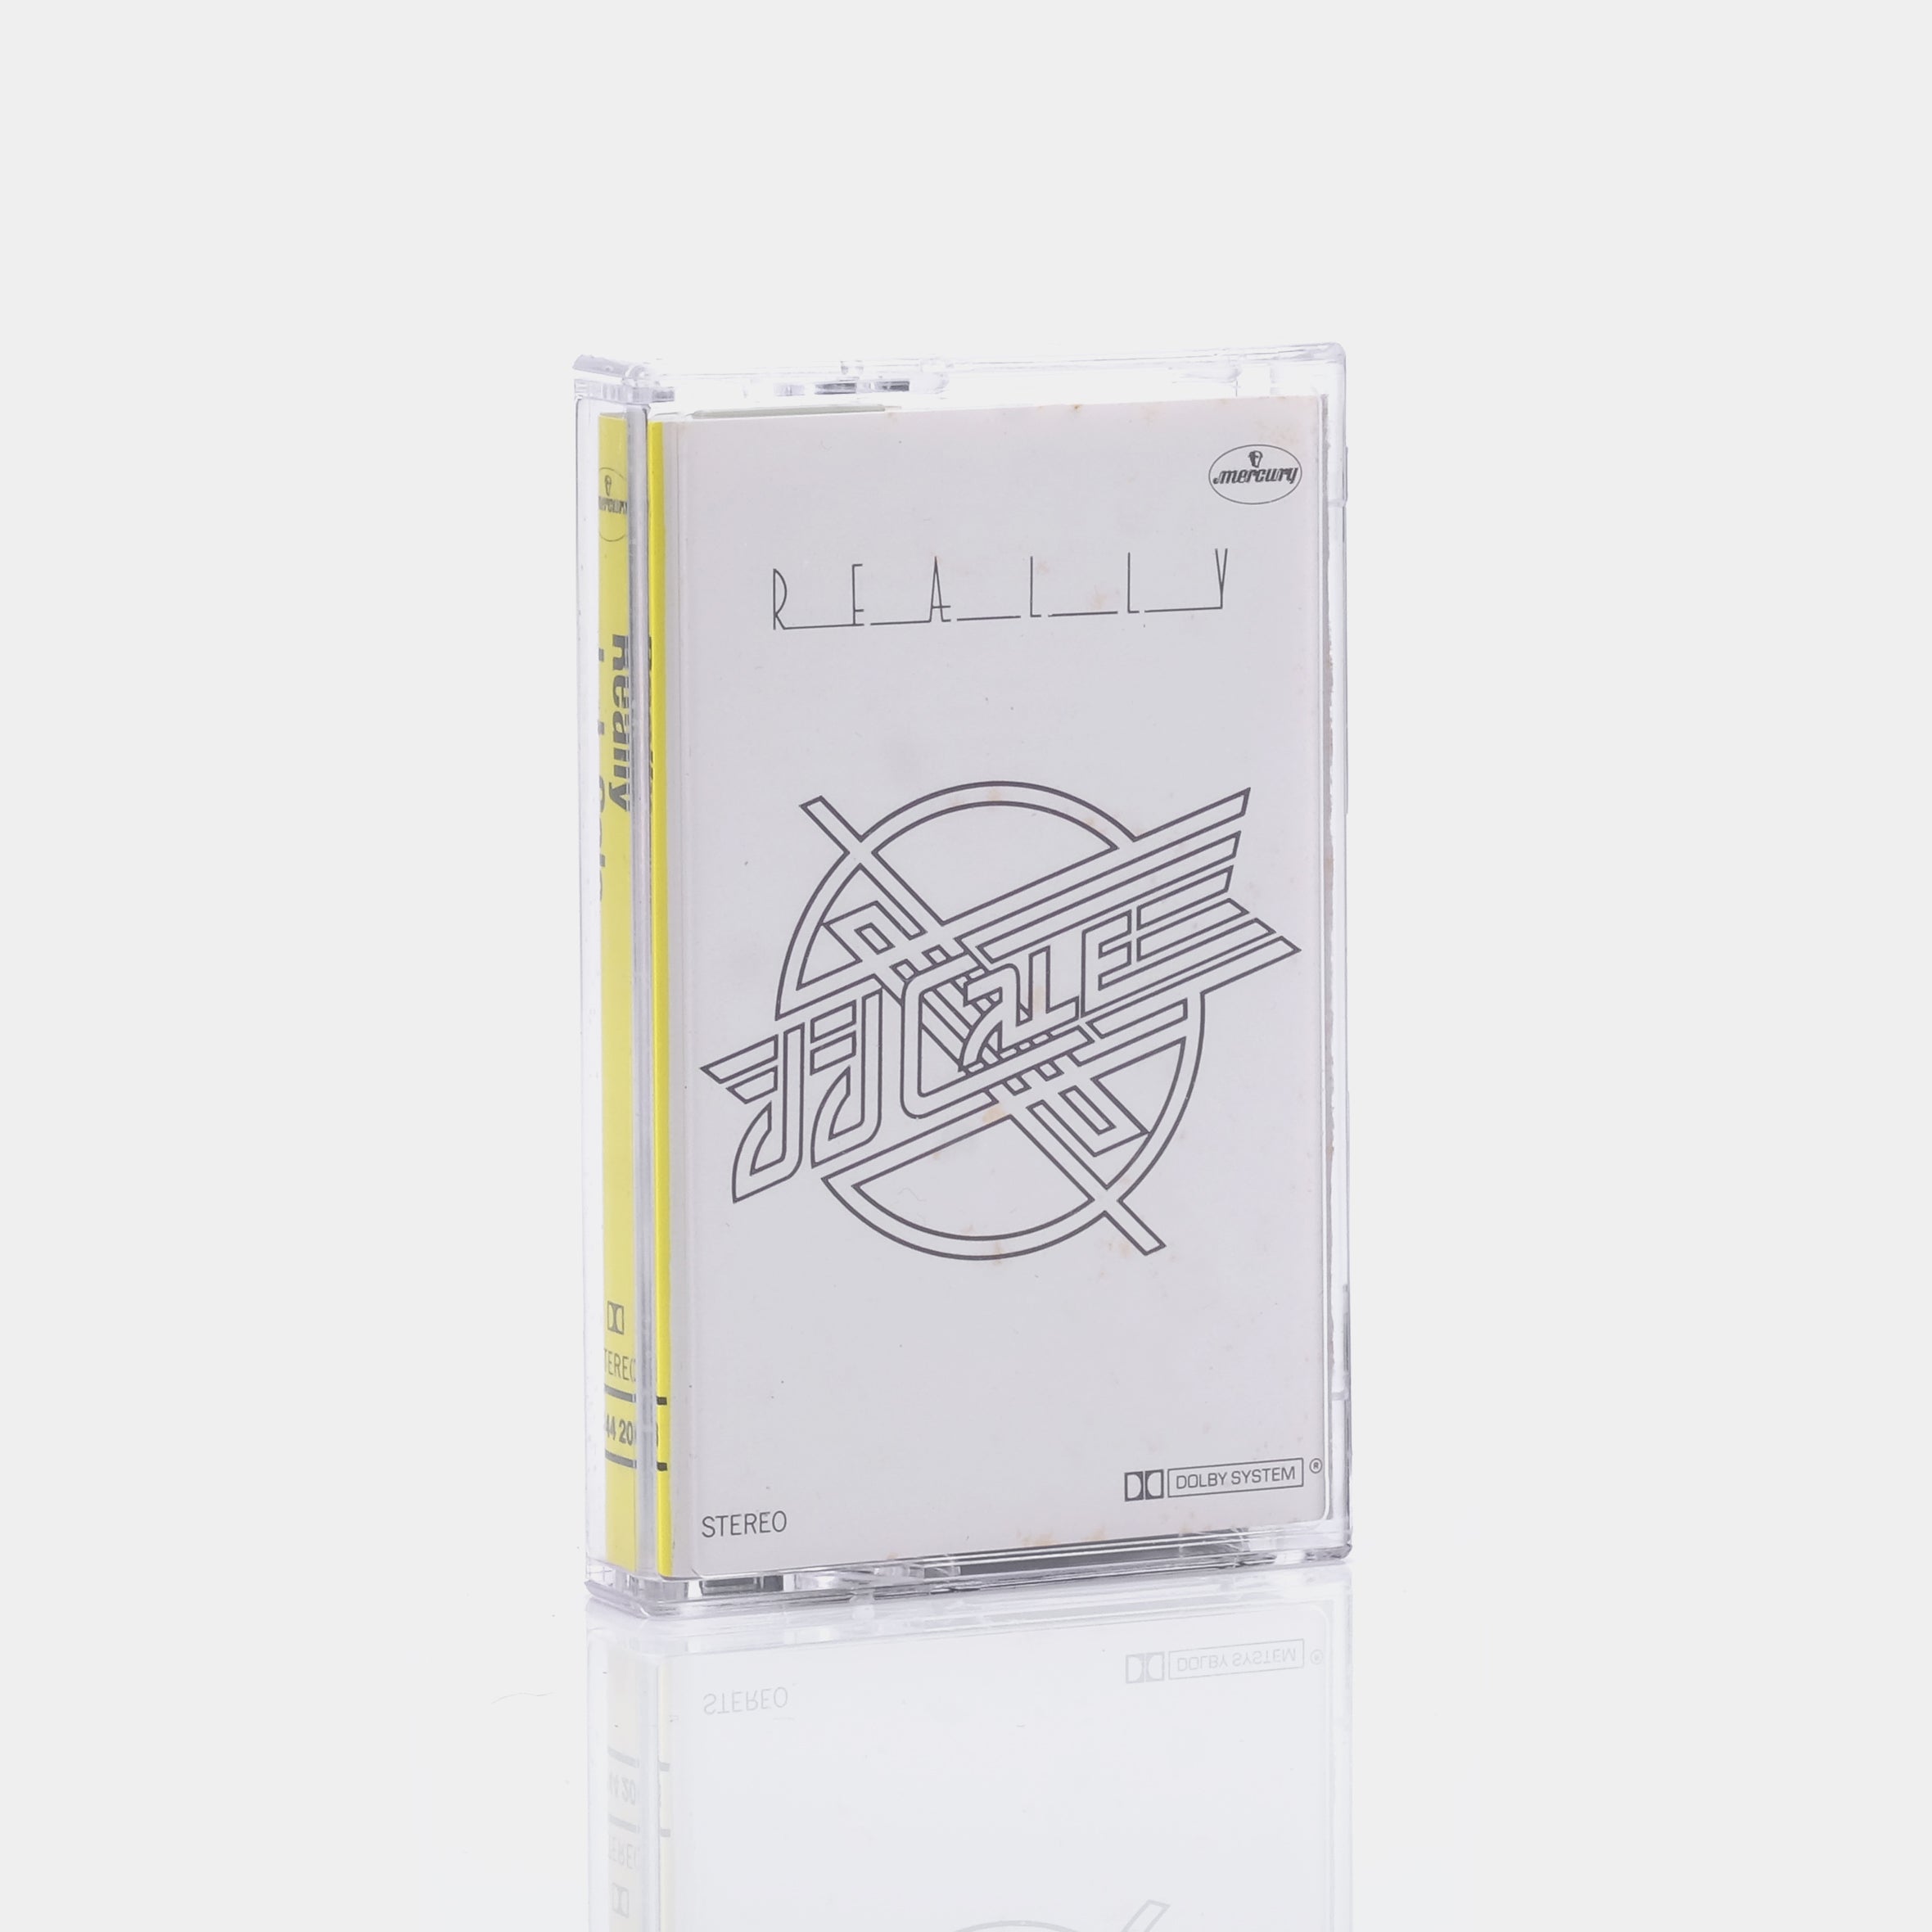 J.J. Cale - Really Cassette Tape